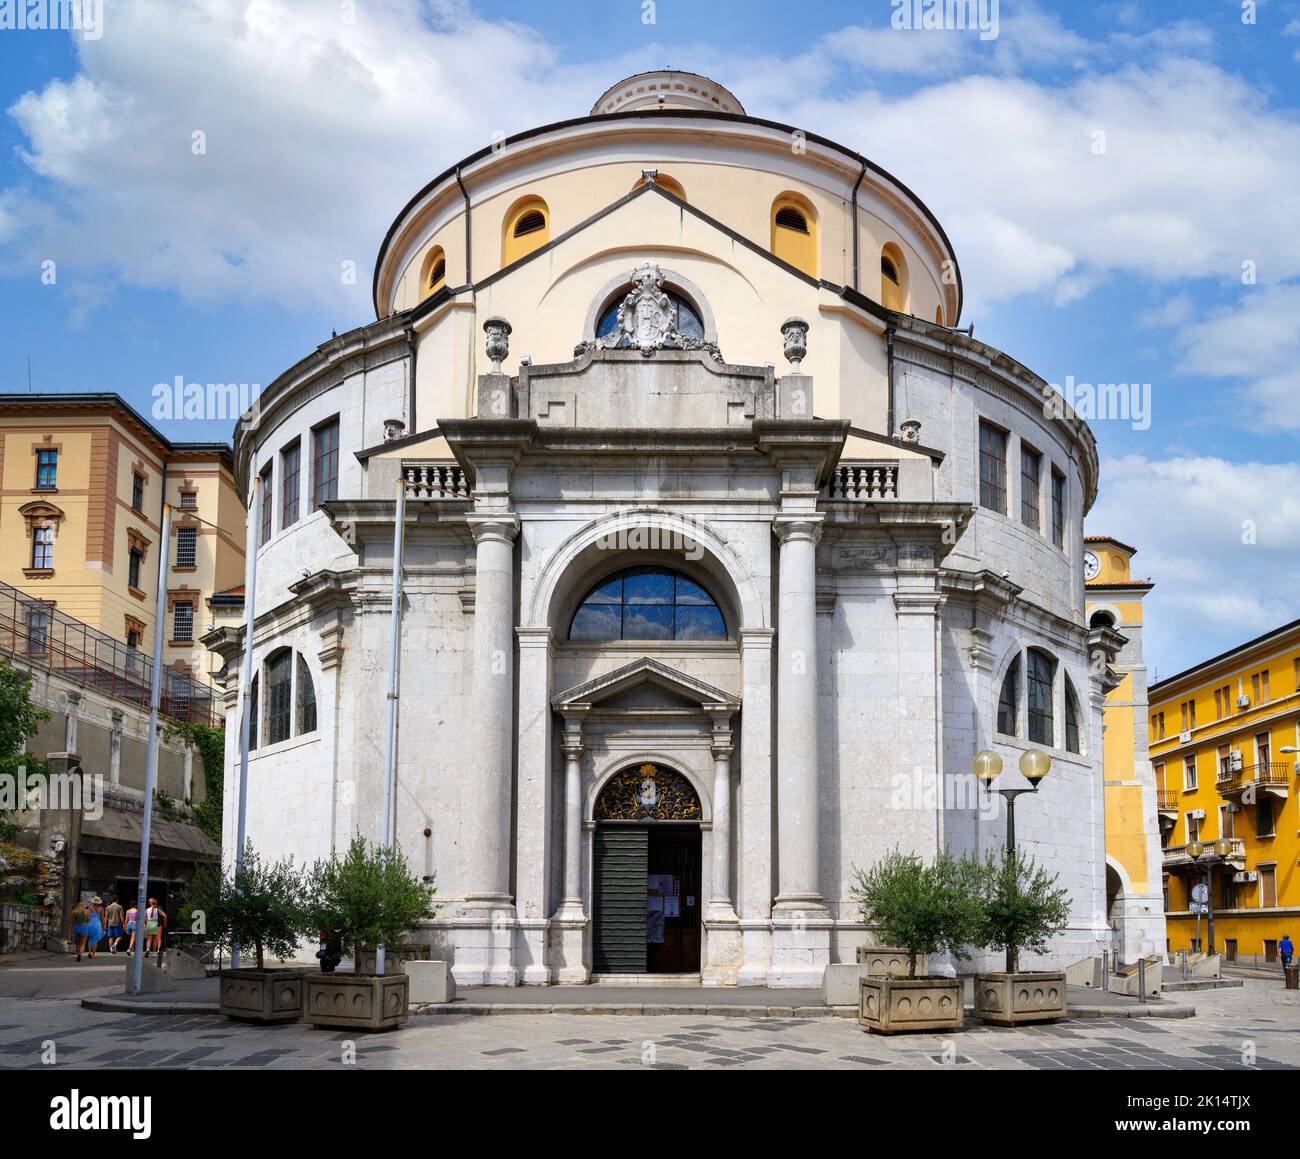 St Vitus Cathedral, Rijeka, Croatia Stock Photo